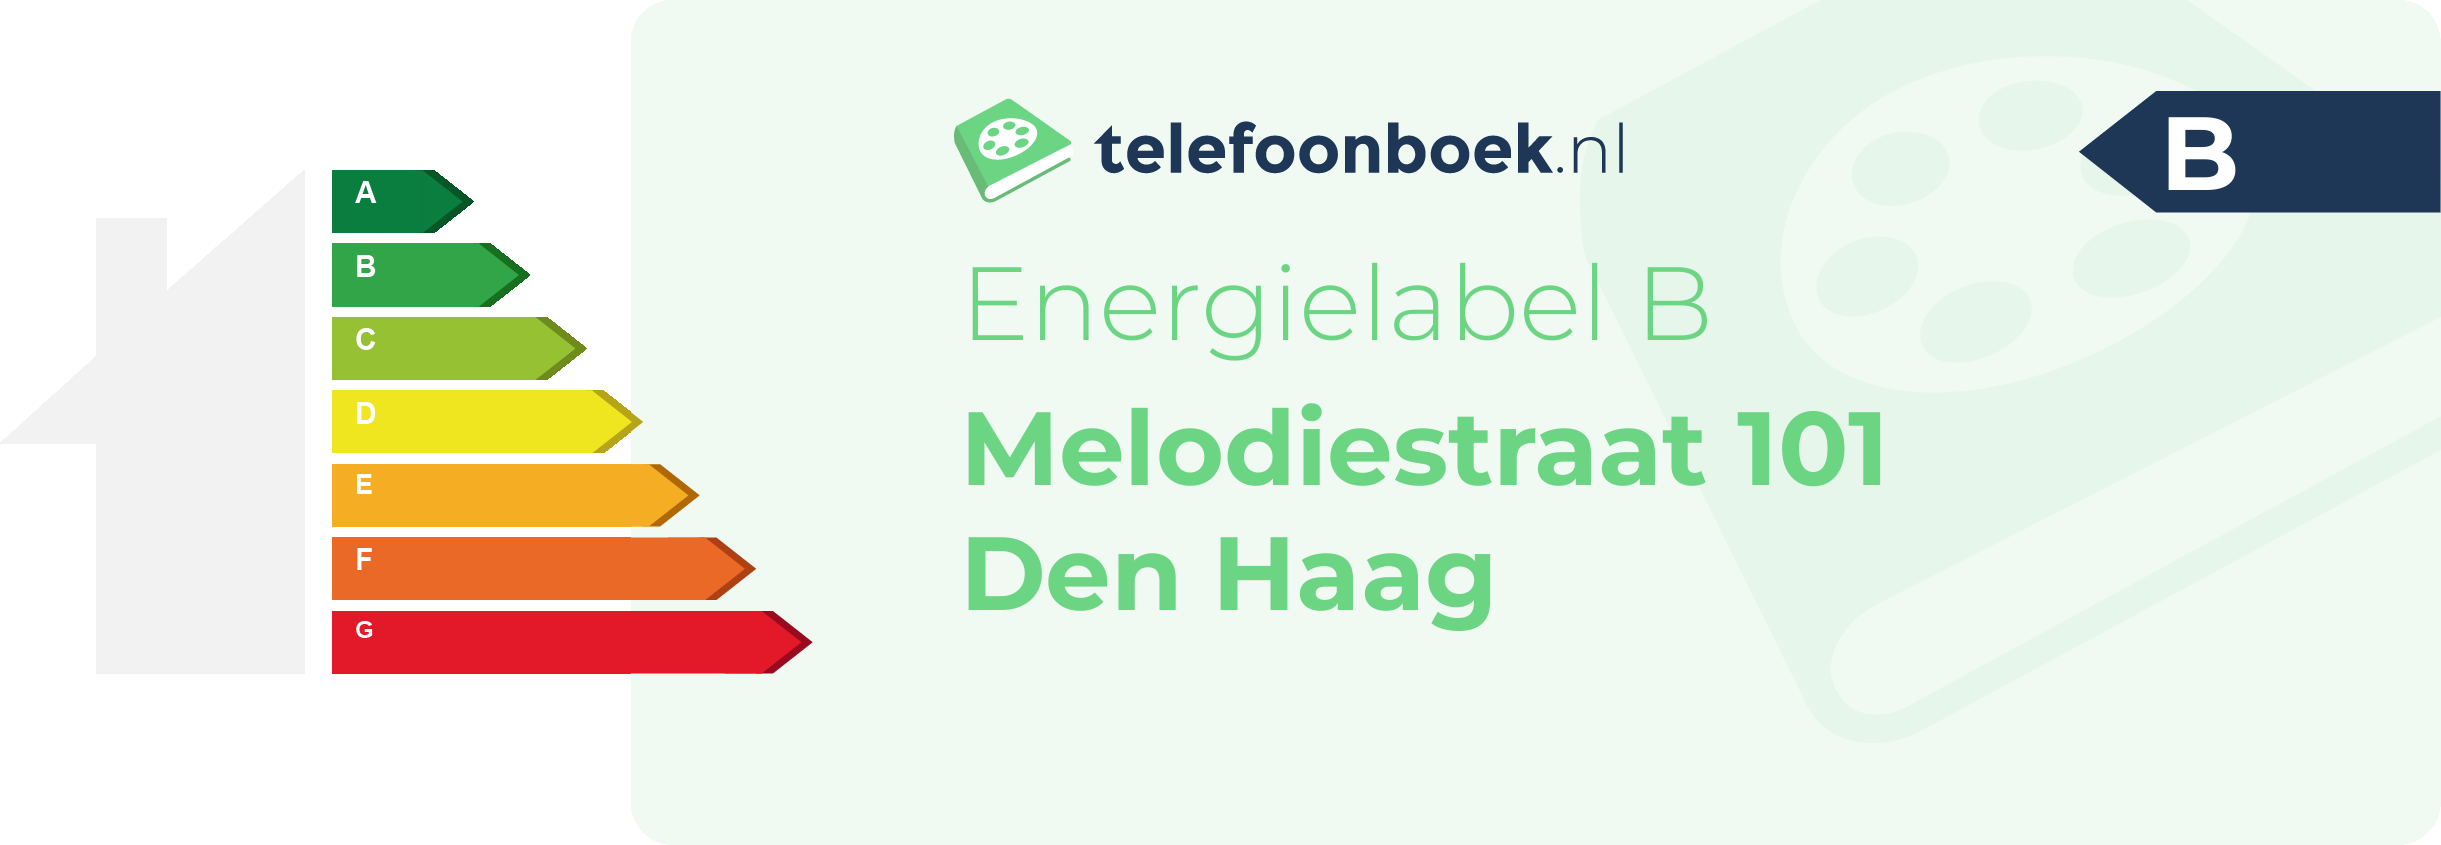 Energielabel Melodiestraat 101 Den Haag